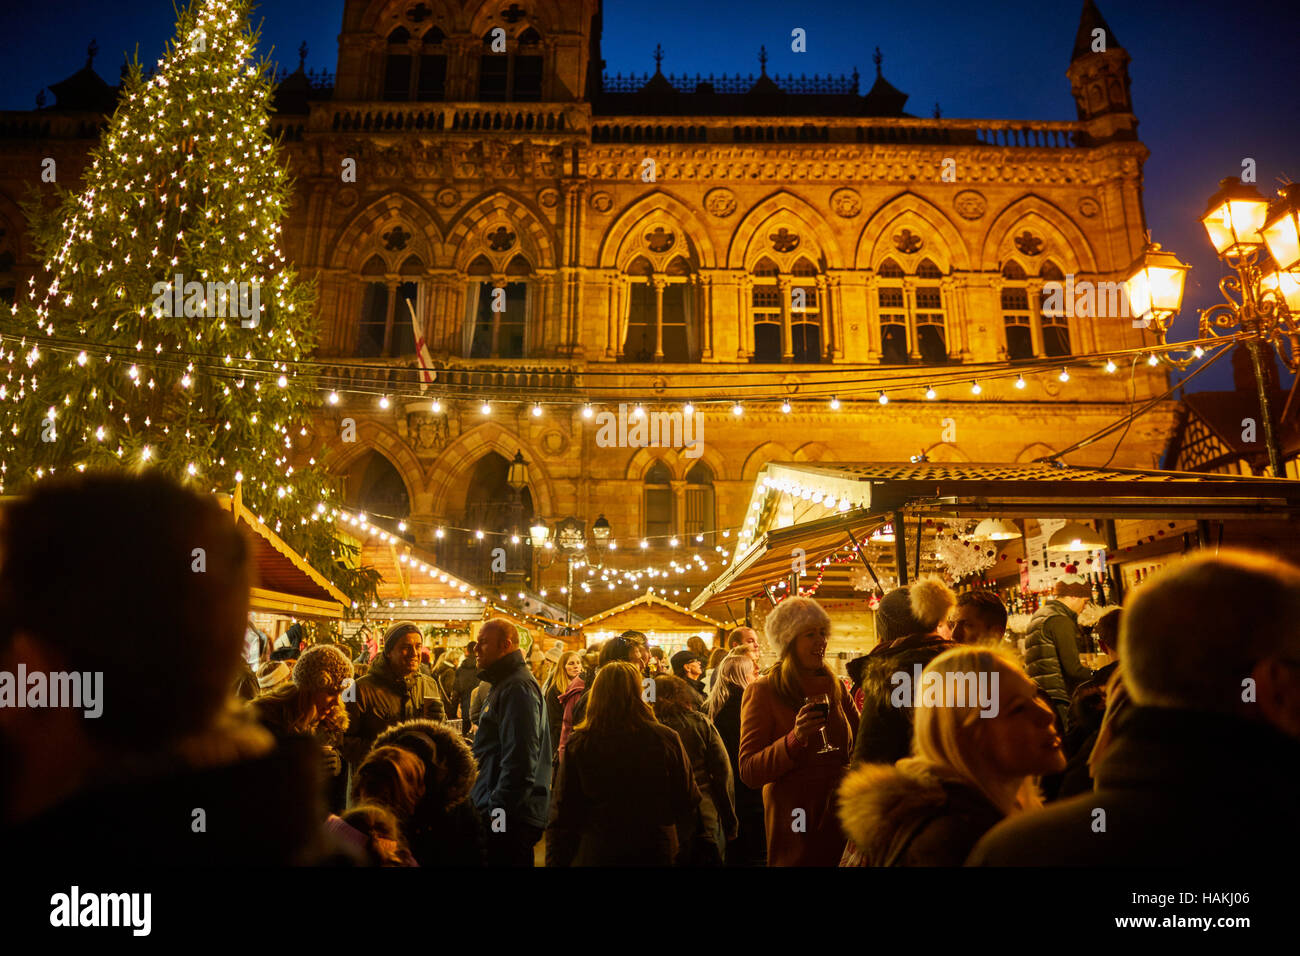 Chester deutsche Weihnachtsmärkte Rathaus außen Weihnachten Xmas festliche Saison Geschenk Markt Basar Hersteller Händler Händler unab Marktstände Stockfoto